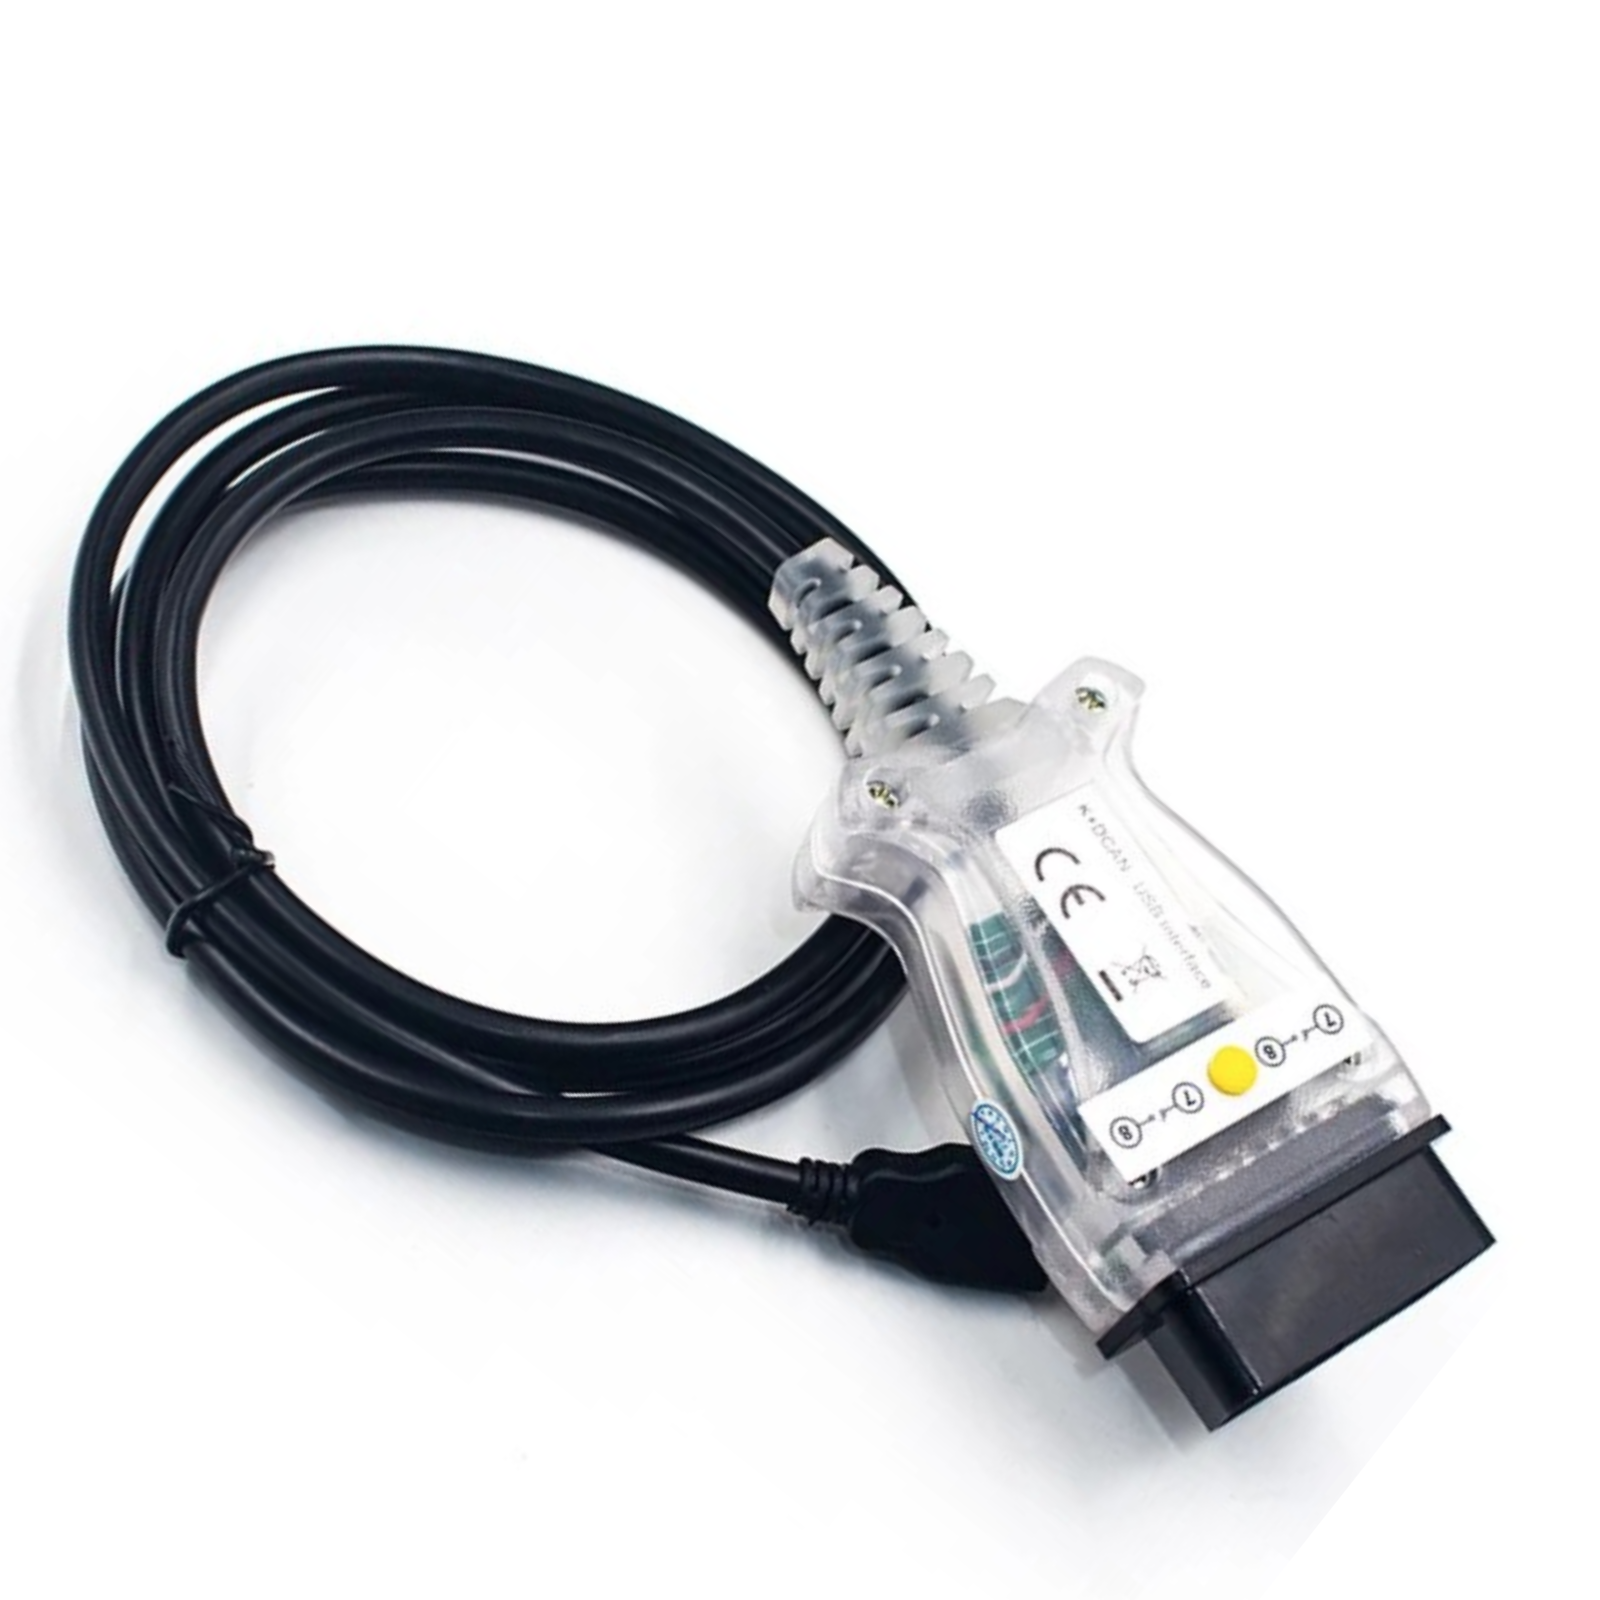 K+CAN FTDI-Chip USB-Diagnoseinterface, INPA-kompatibel für BMW neues Design Schalter